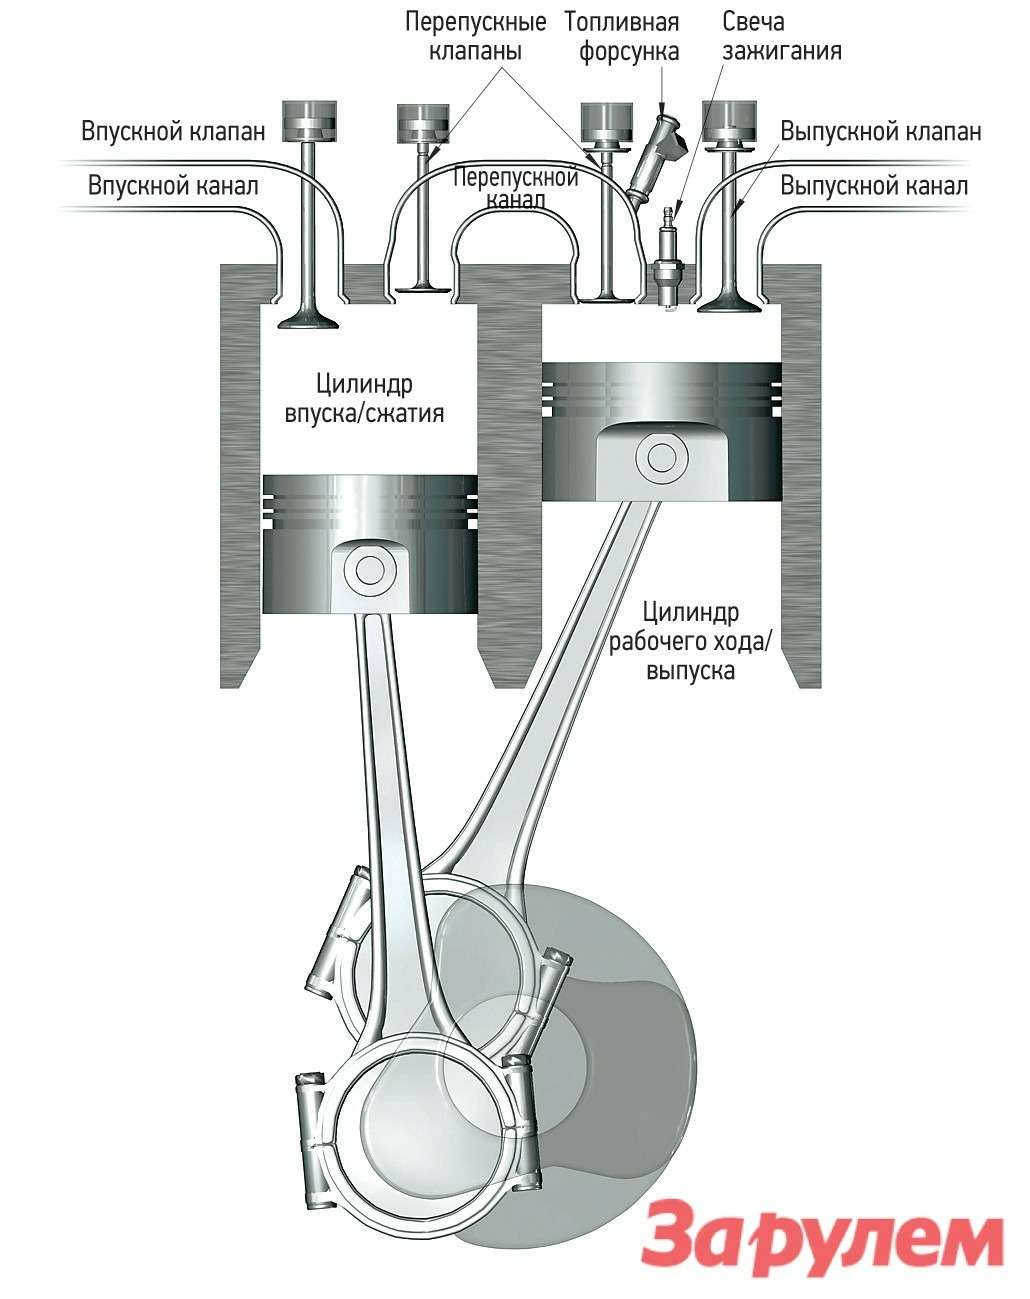 В двигателе Кармело Скудери классические четыре такта распределены между двумя цилиндрами: впуск и сжатие происходят в одном, а рабочий ход и выпуск — в другом.